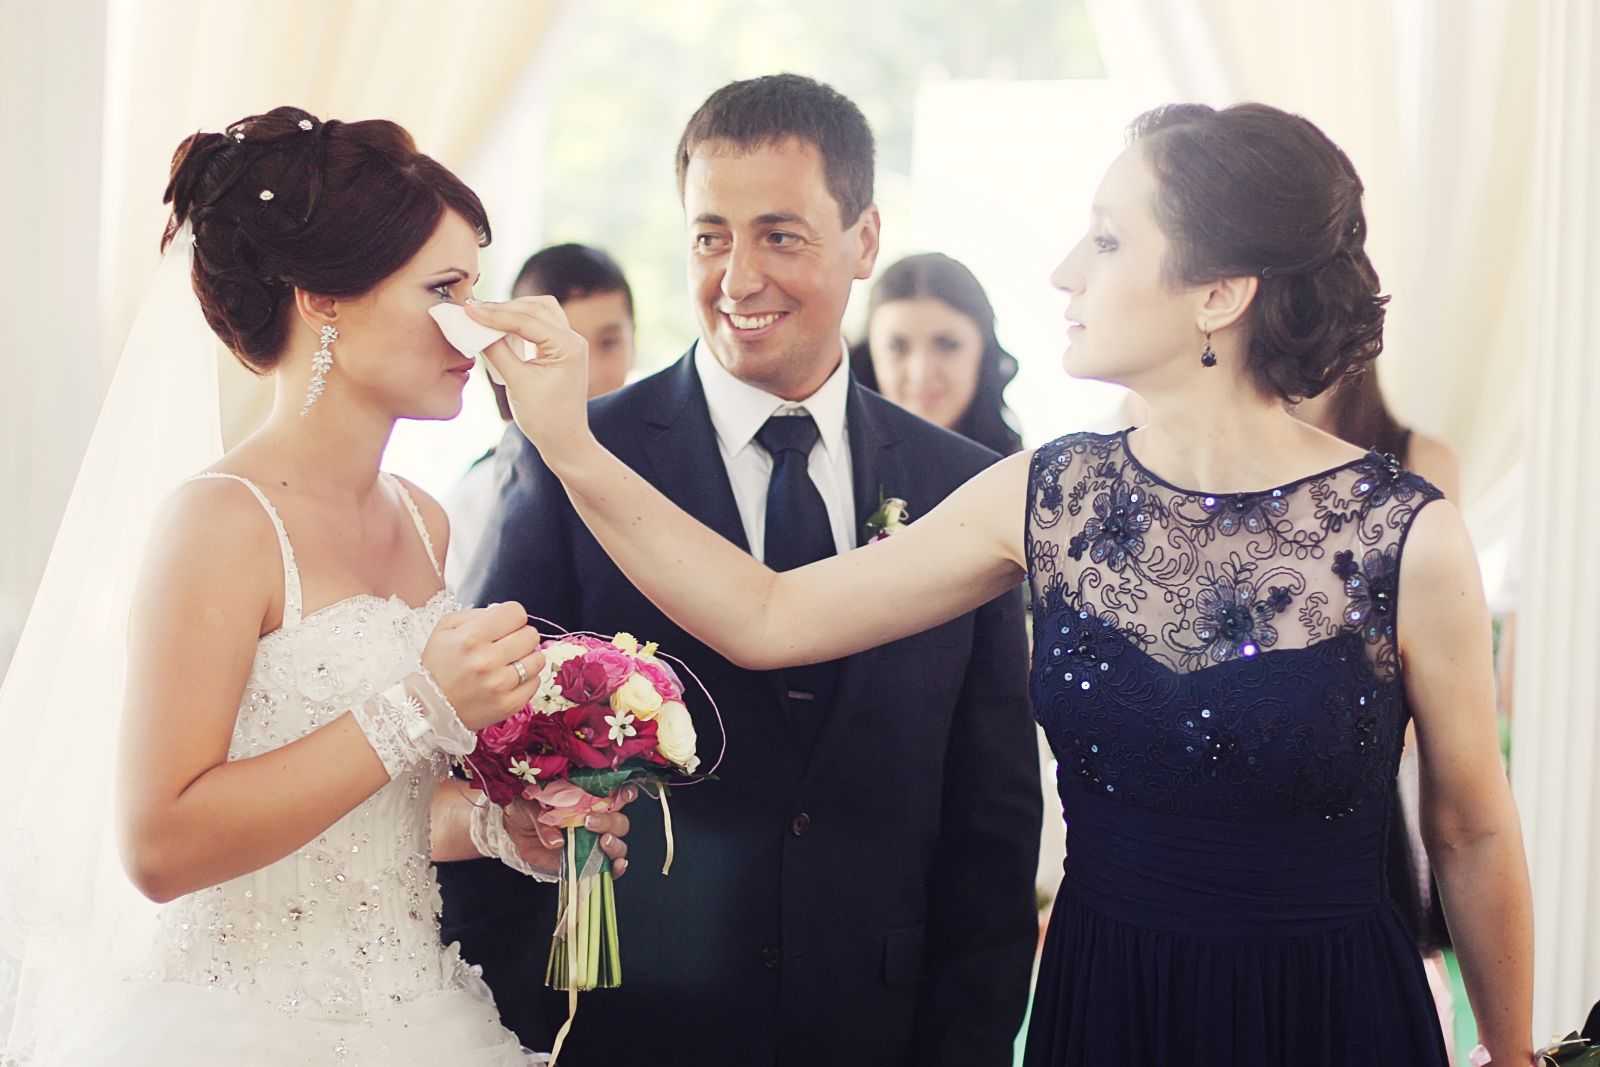 Обязанности жениха и невесты: что доверить новобрачному?